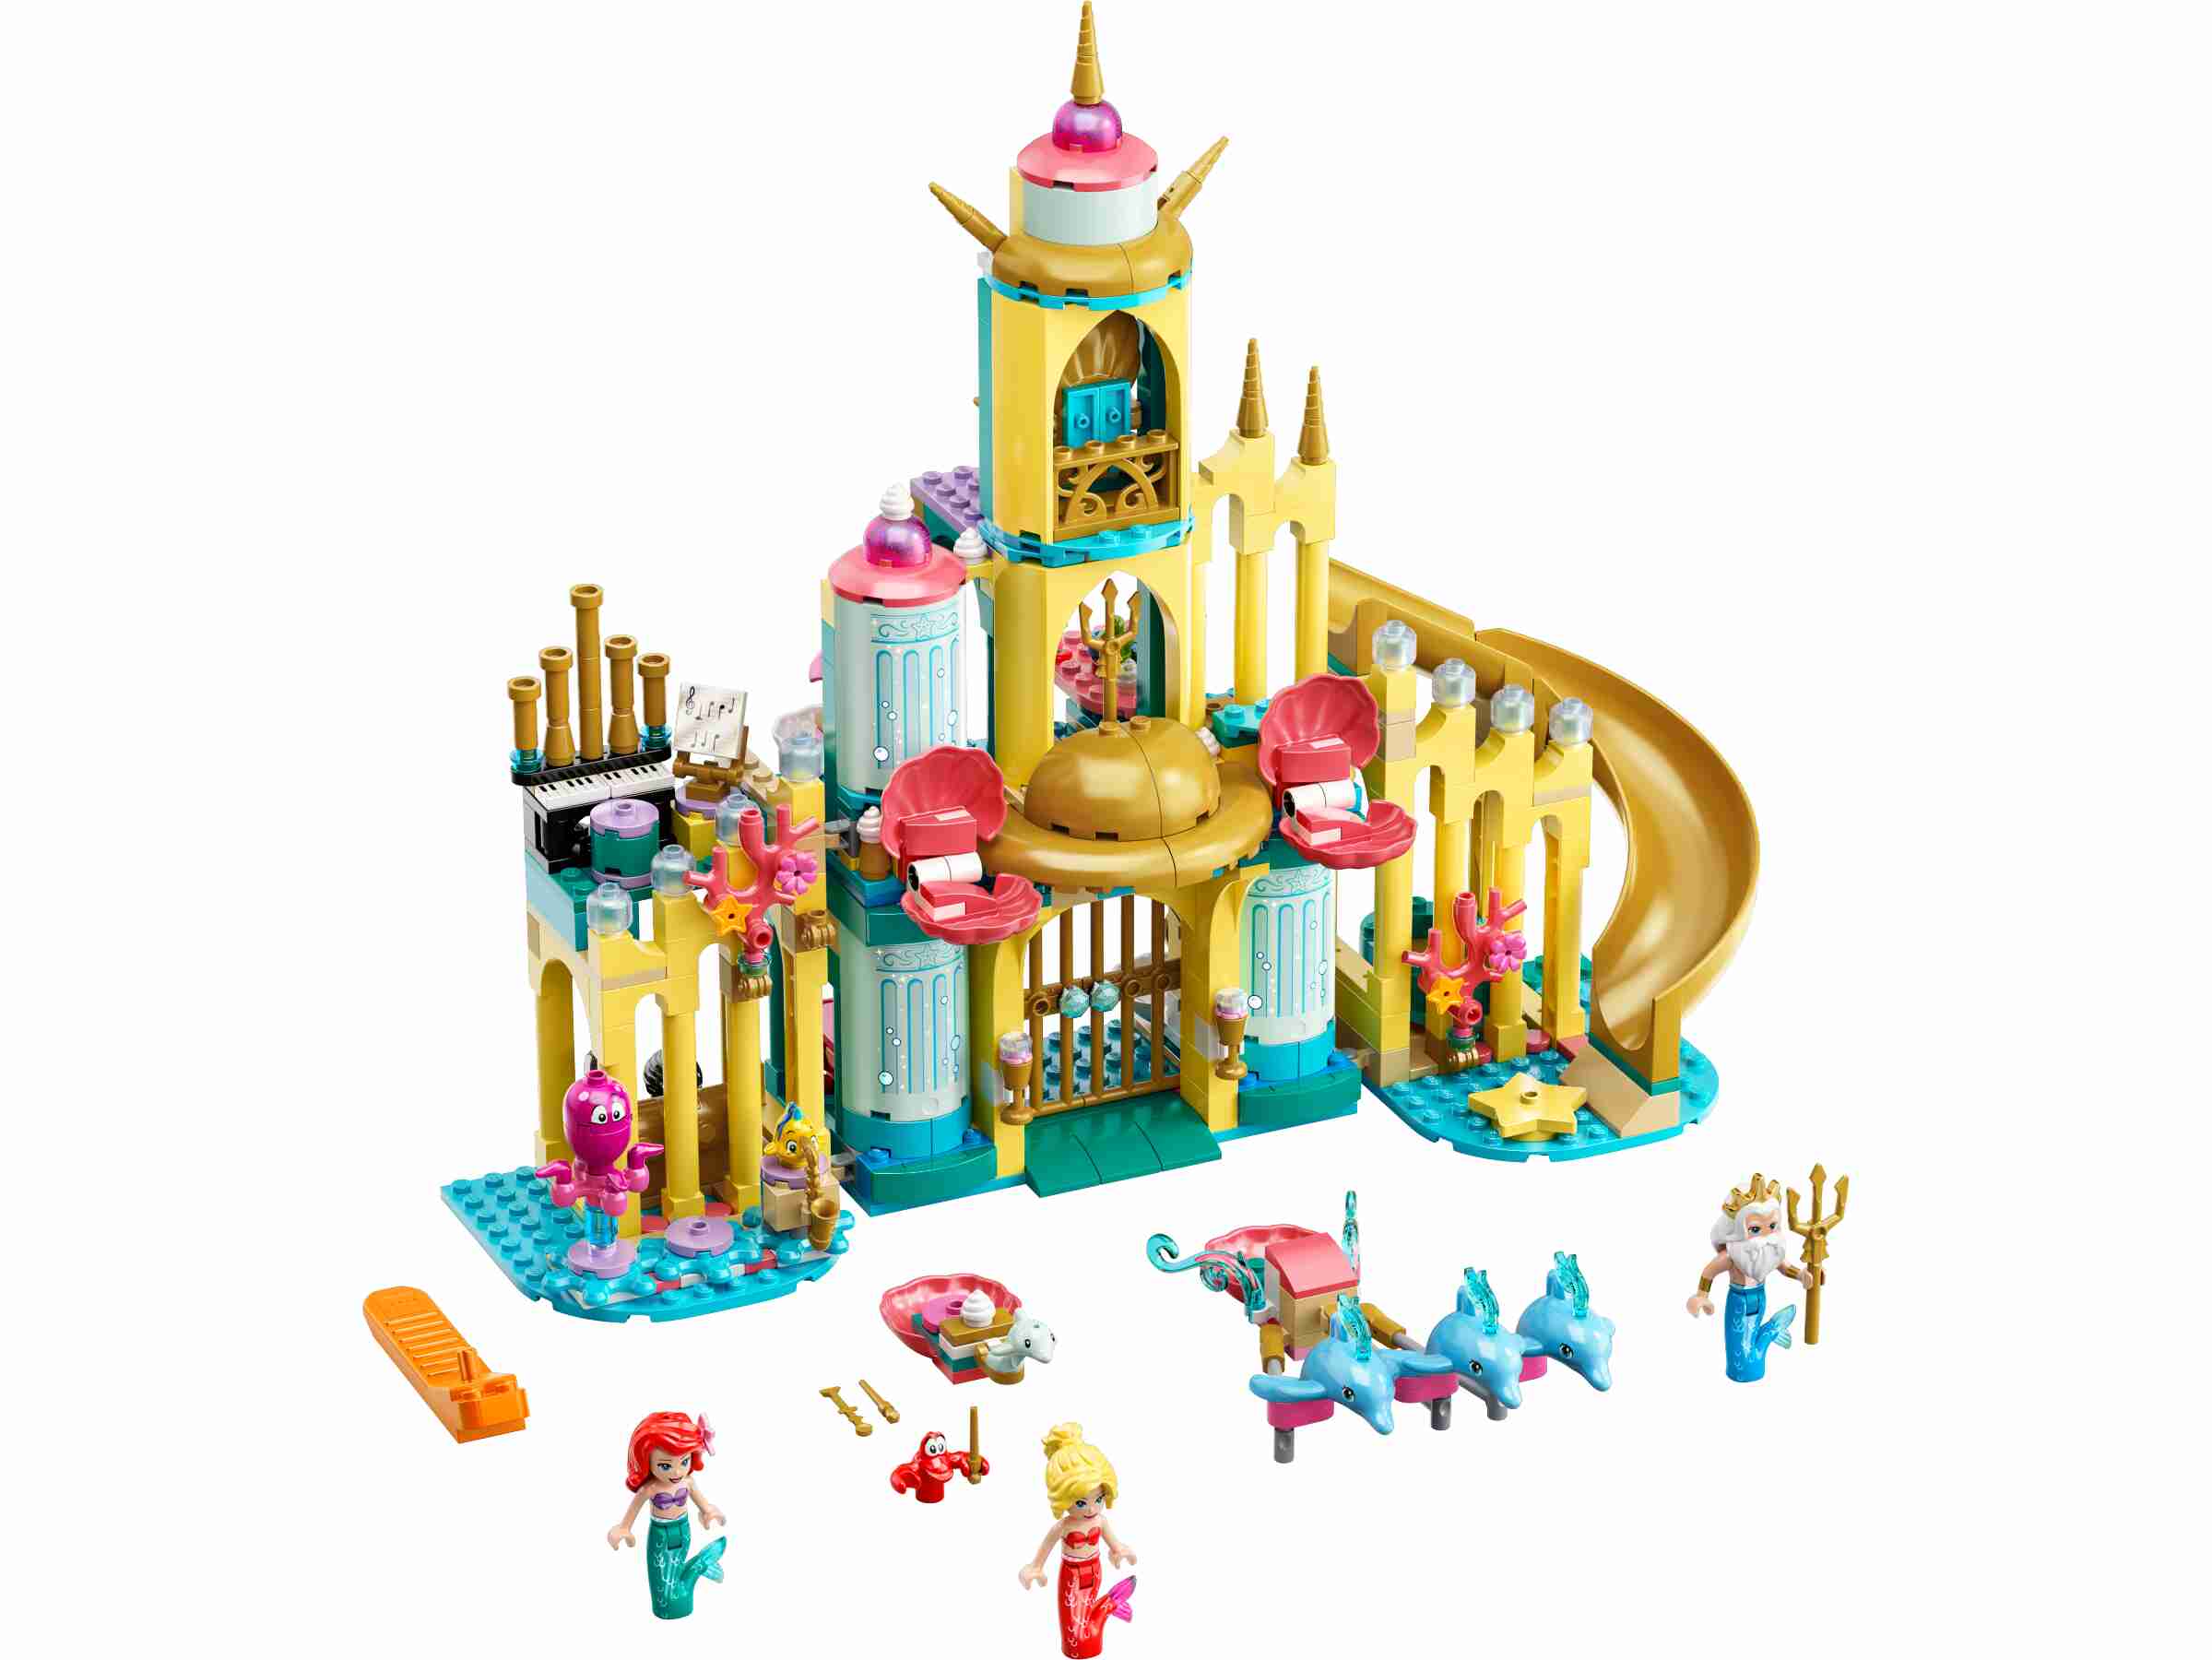 LEGO 43207 Disney Arielles Unterwasserschloss, 3 Delfin-Figuren und Schloss